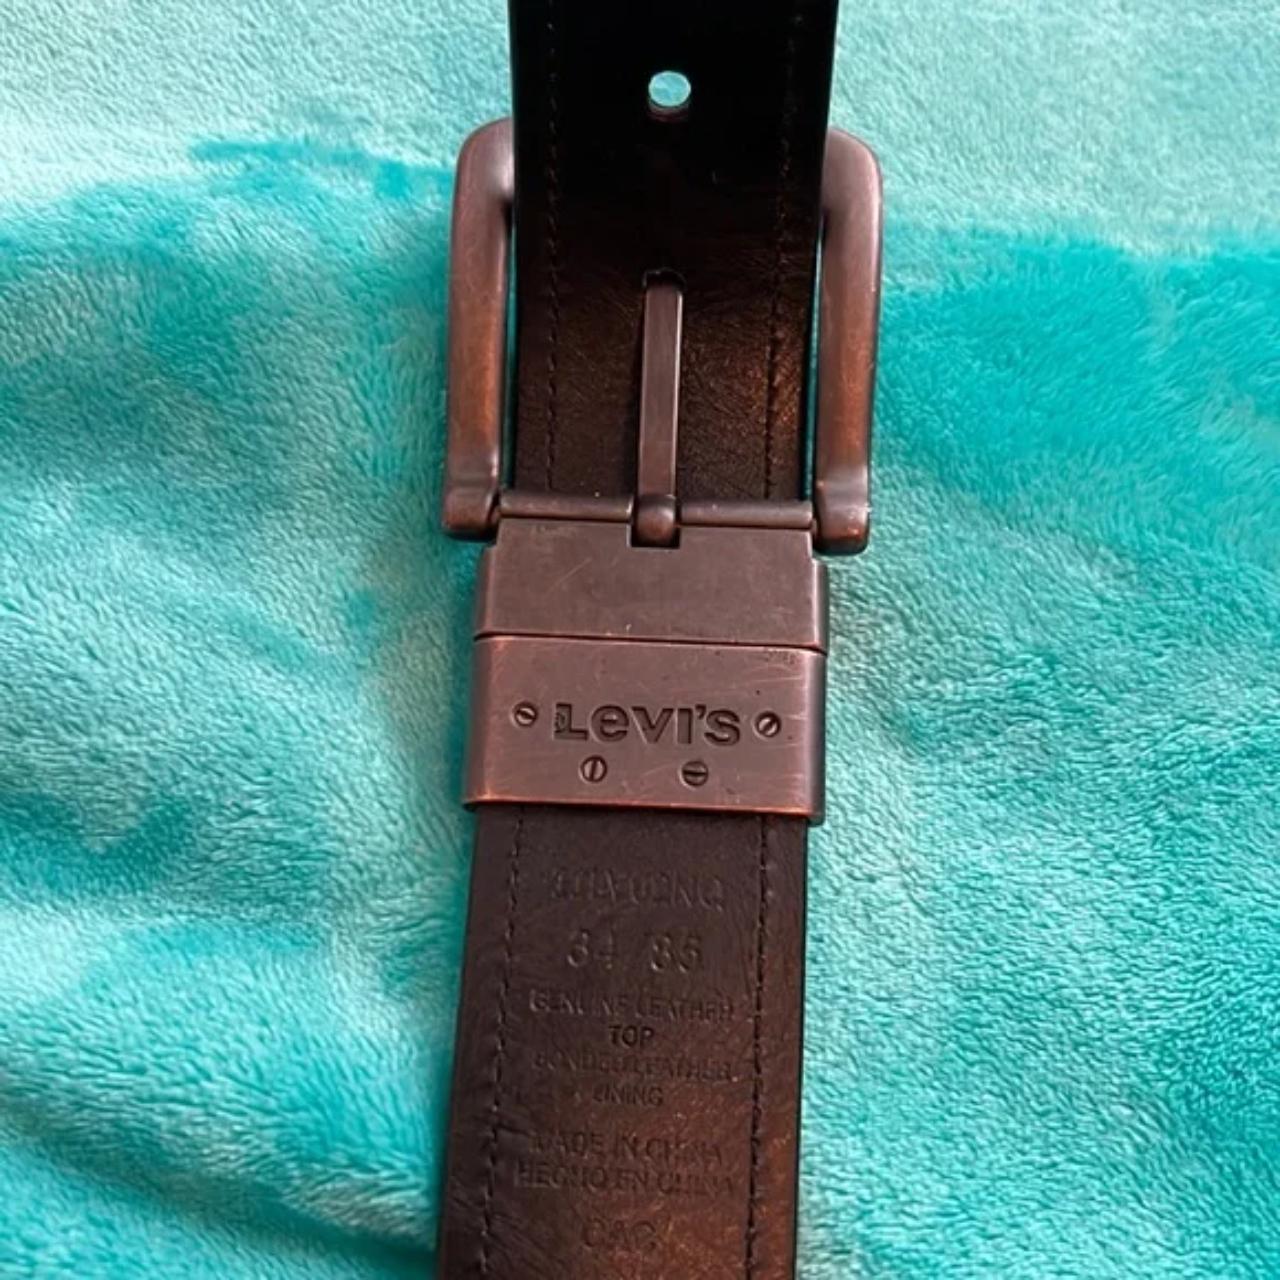 Levi’s Dark Brown Leather Belt 42” length Comes... - Depop